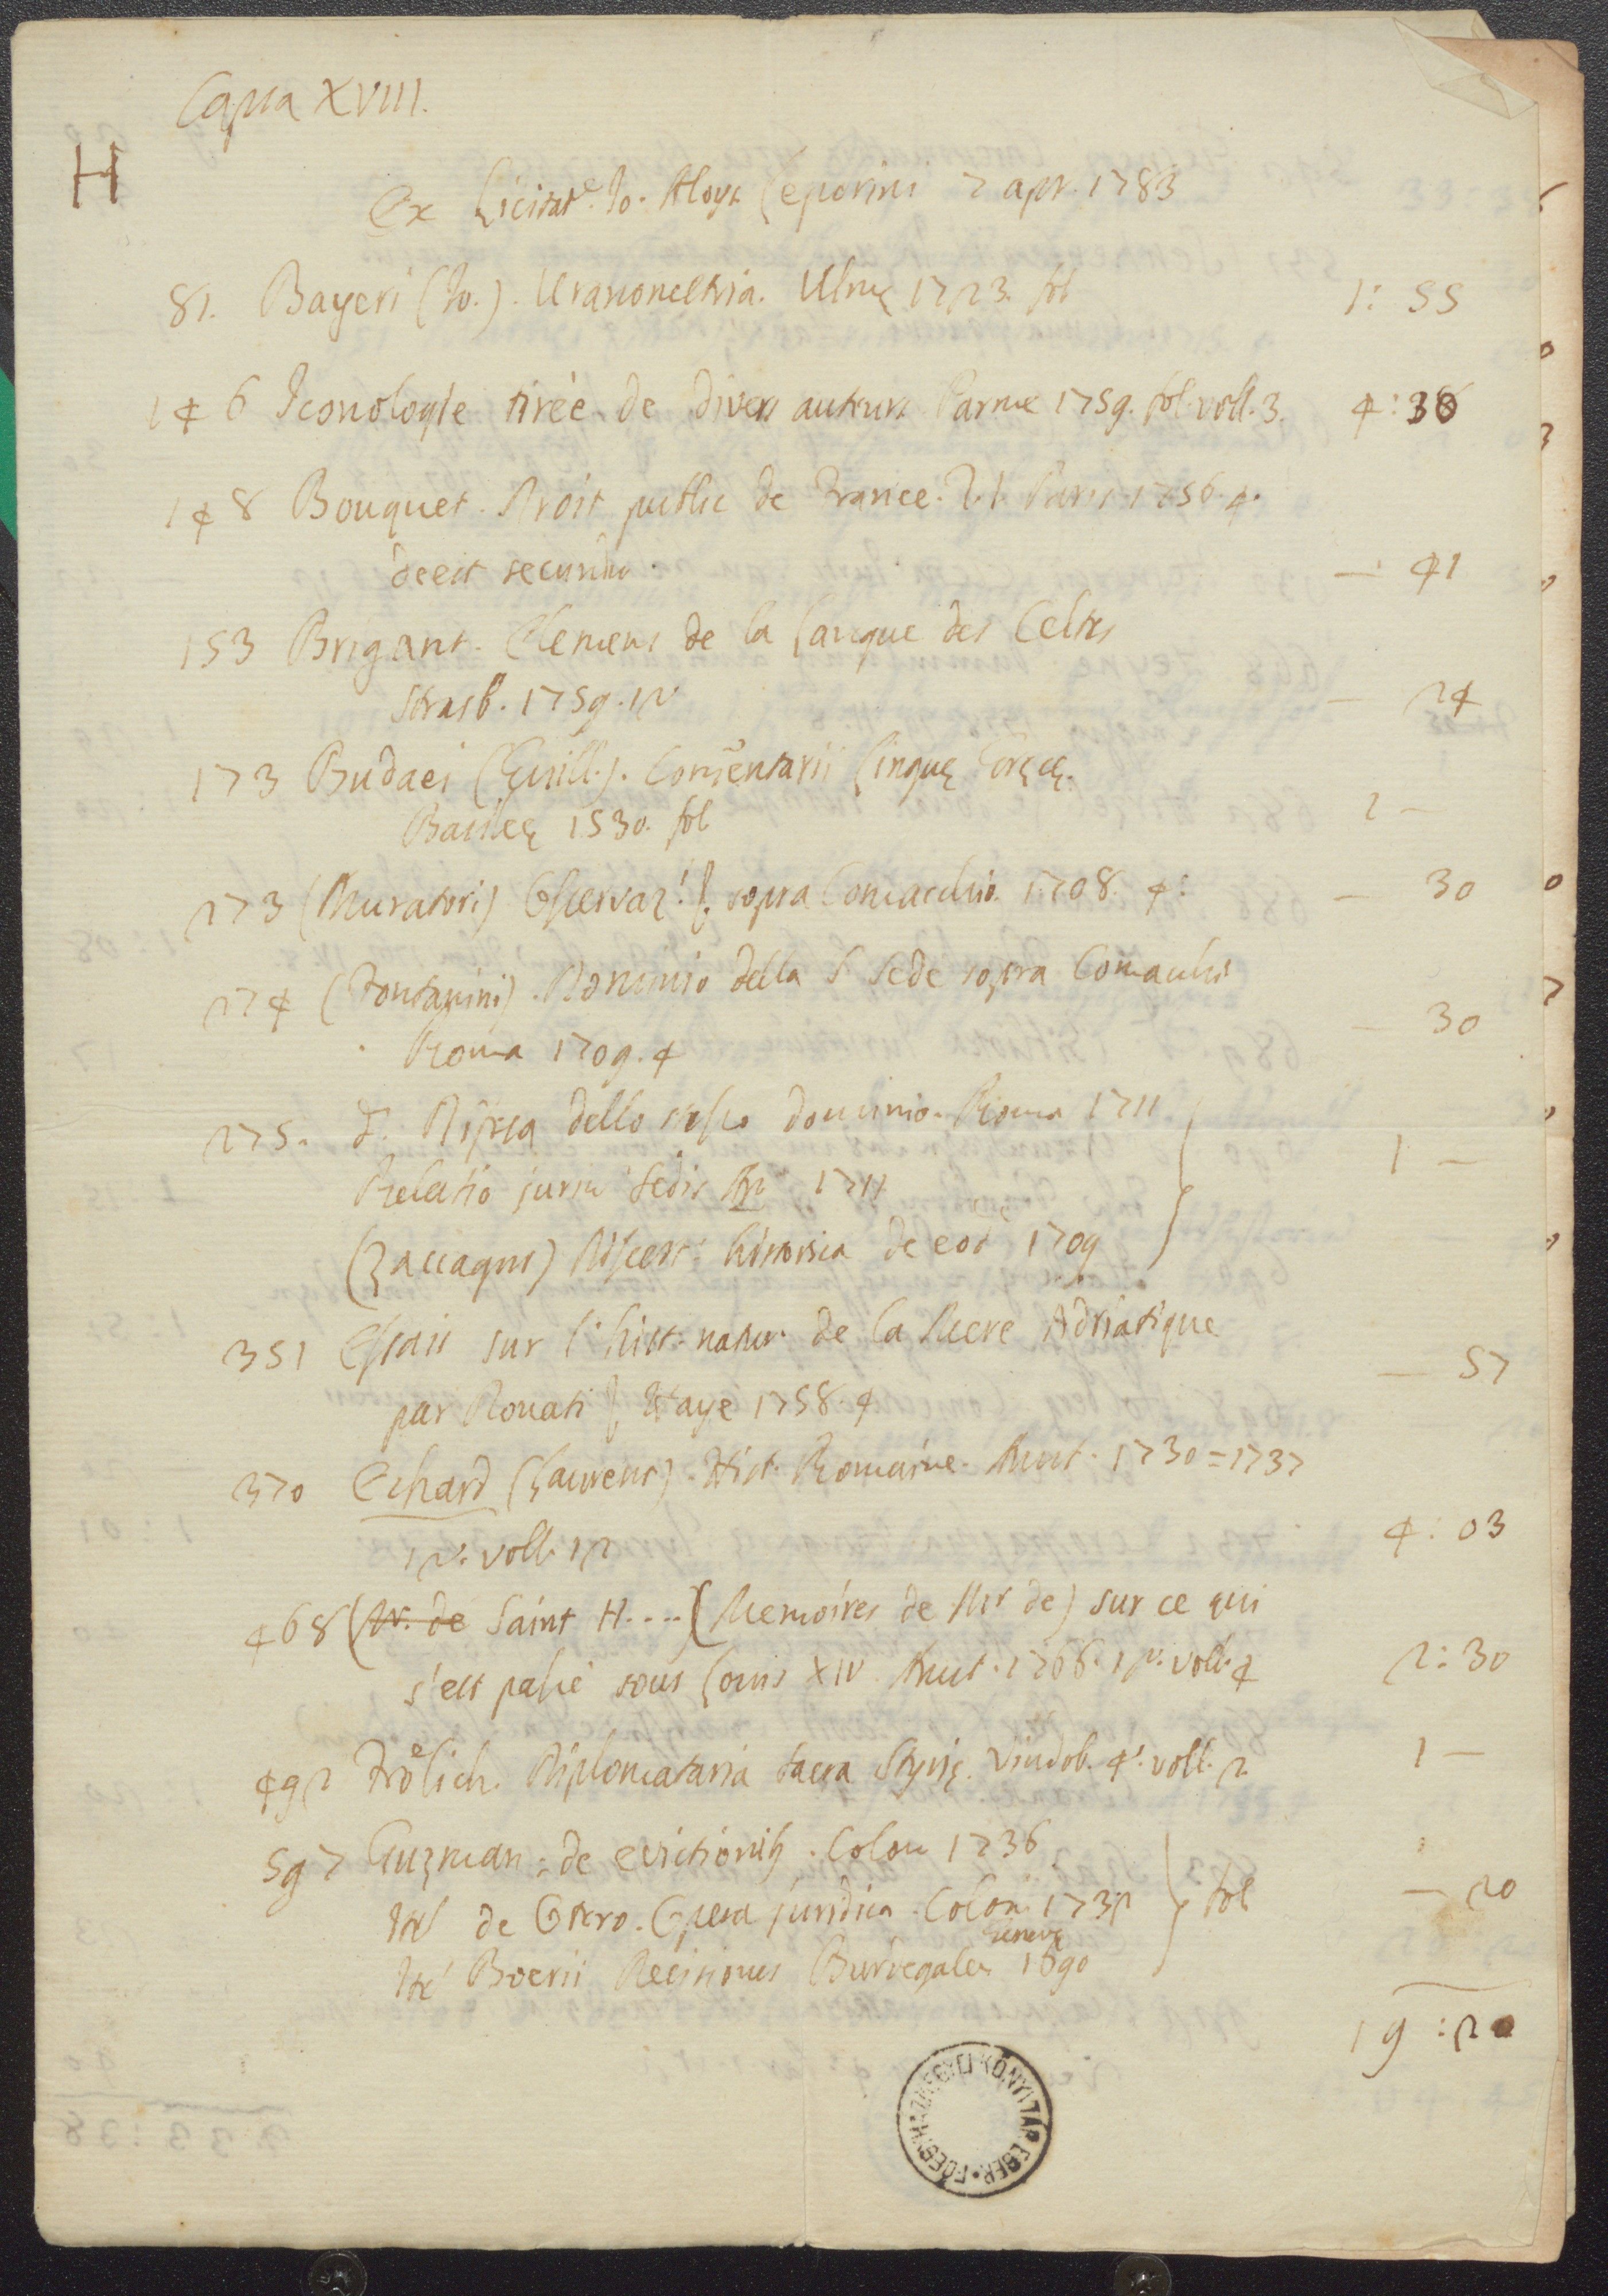 Giuseppe Aloisio Leporini könyveinek 1783. április 2-án tartott aukcióján vett művek jegyzéke